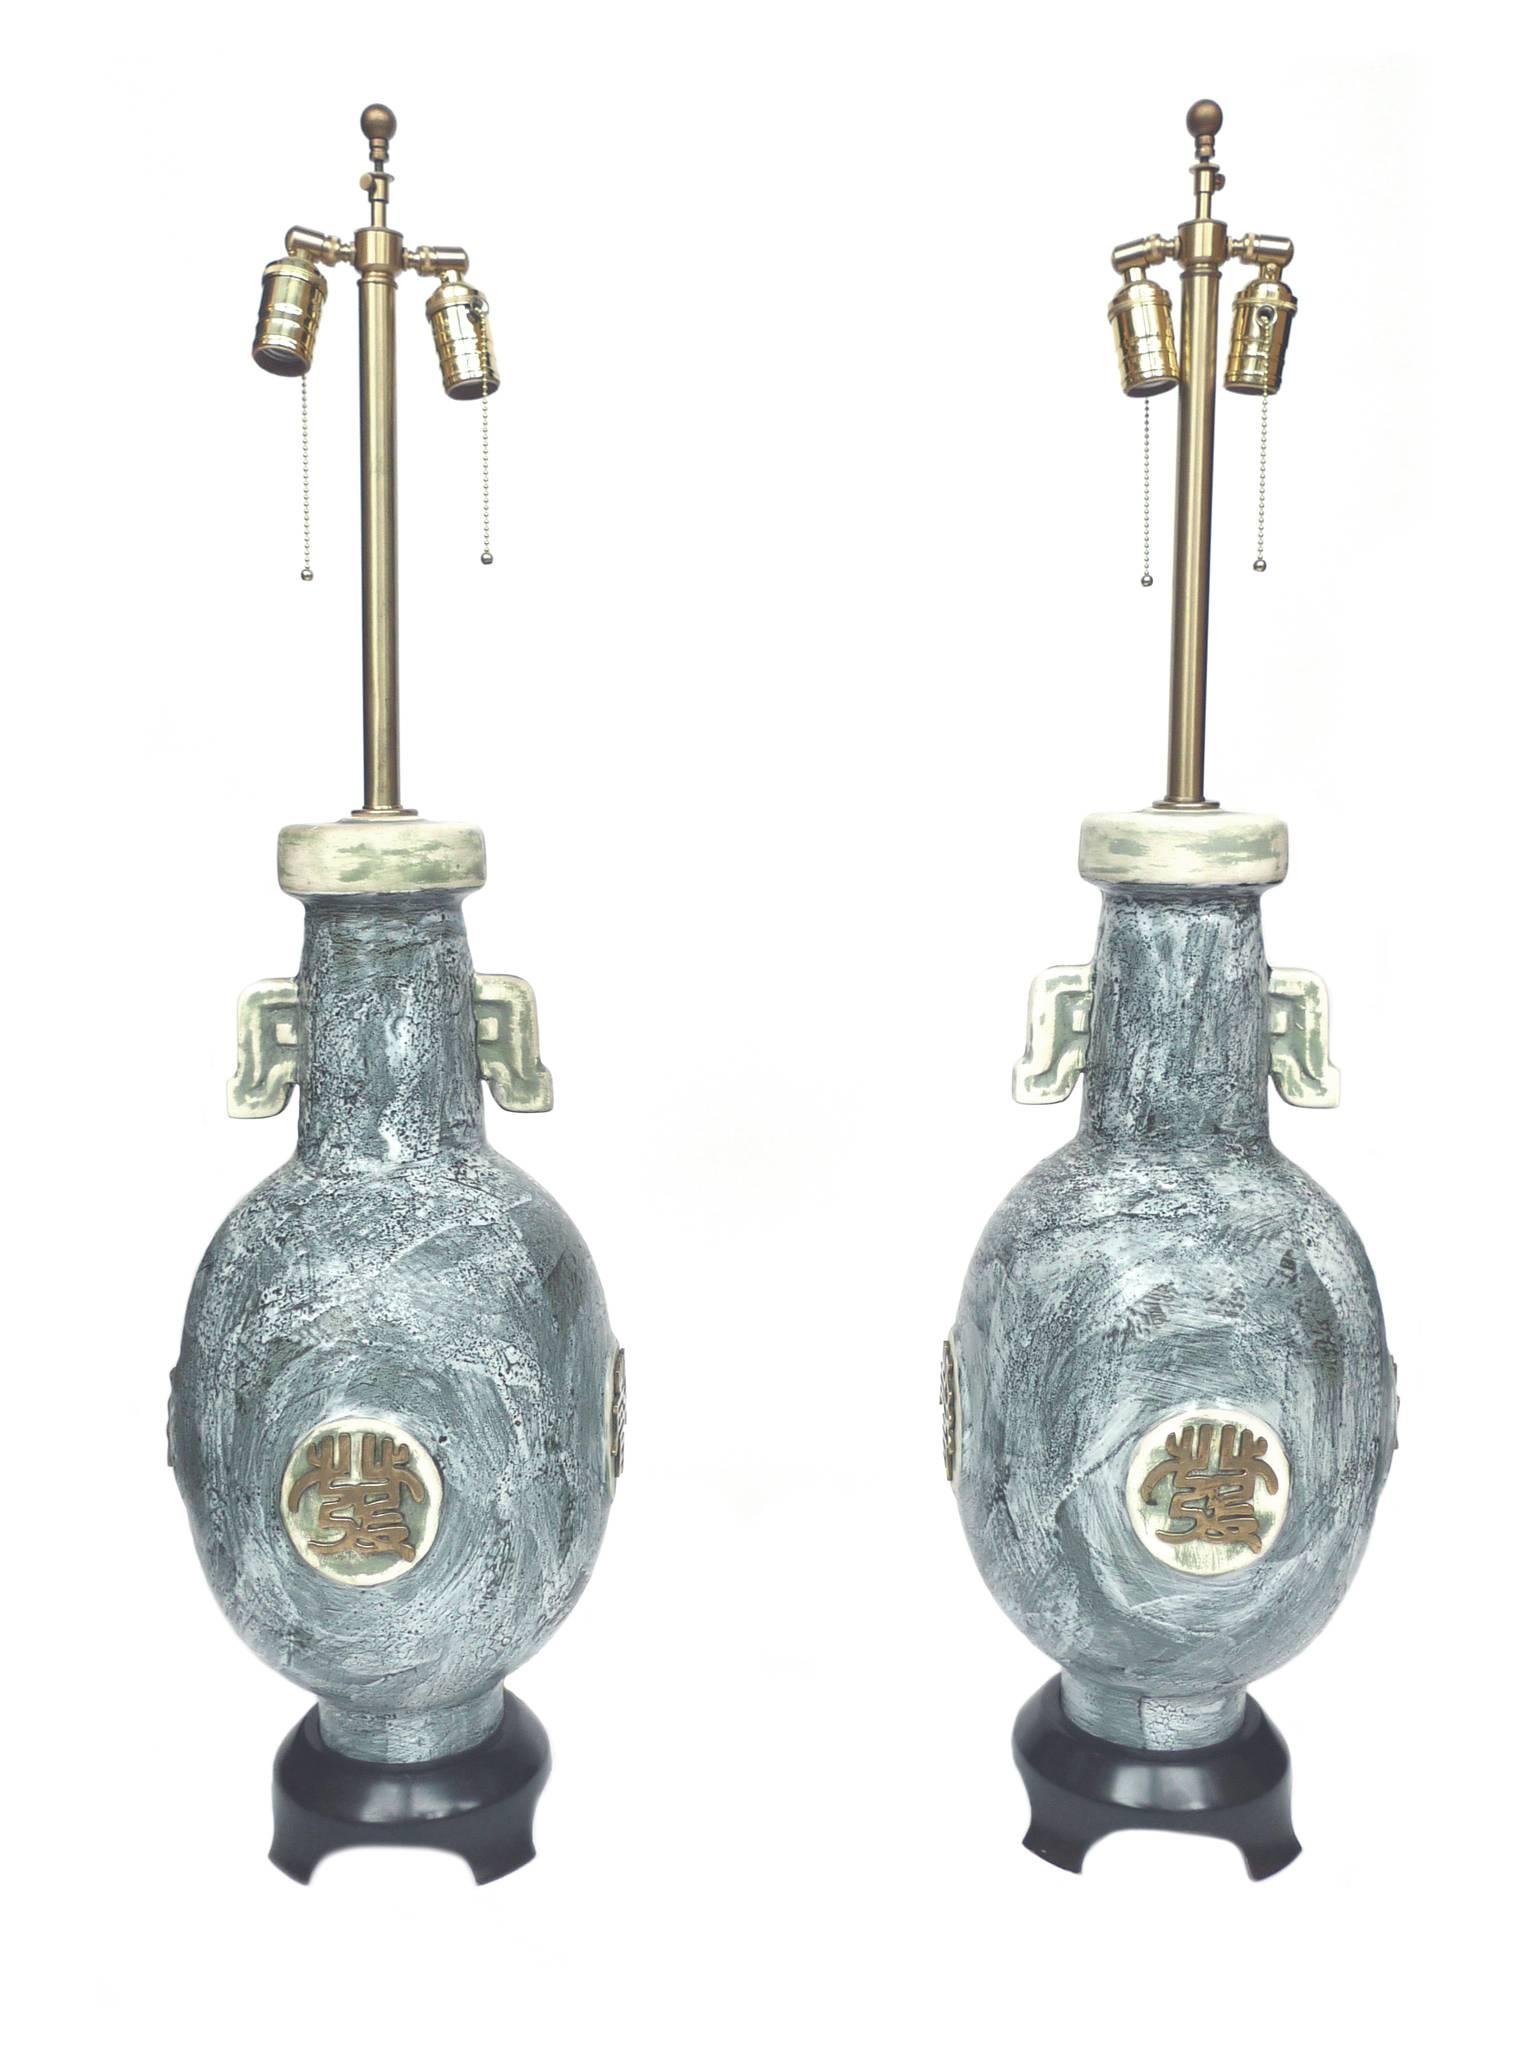 Ces lampes ont été produites par la Marbro Lamp Company. Leur conception comprend un corps de pot en céramique avec une glaçure bleu-gris picturale et des décorations stylisées en laiton qui ornent chaque côté de la lampe. Les bases sont en bois